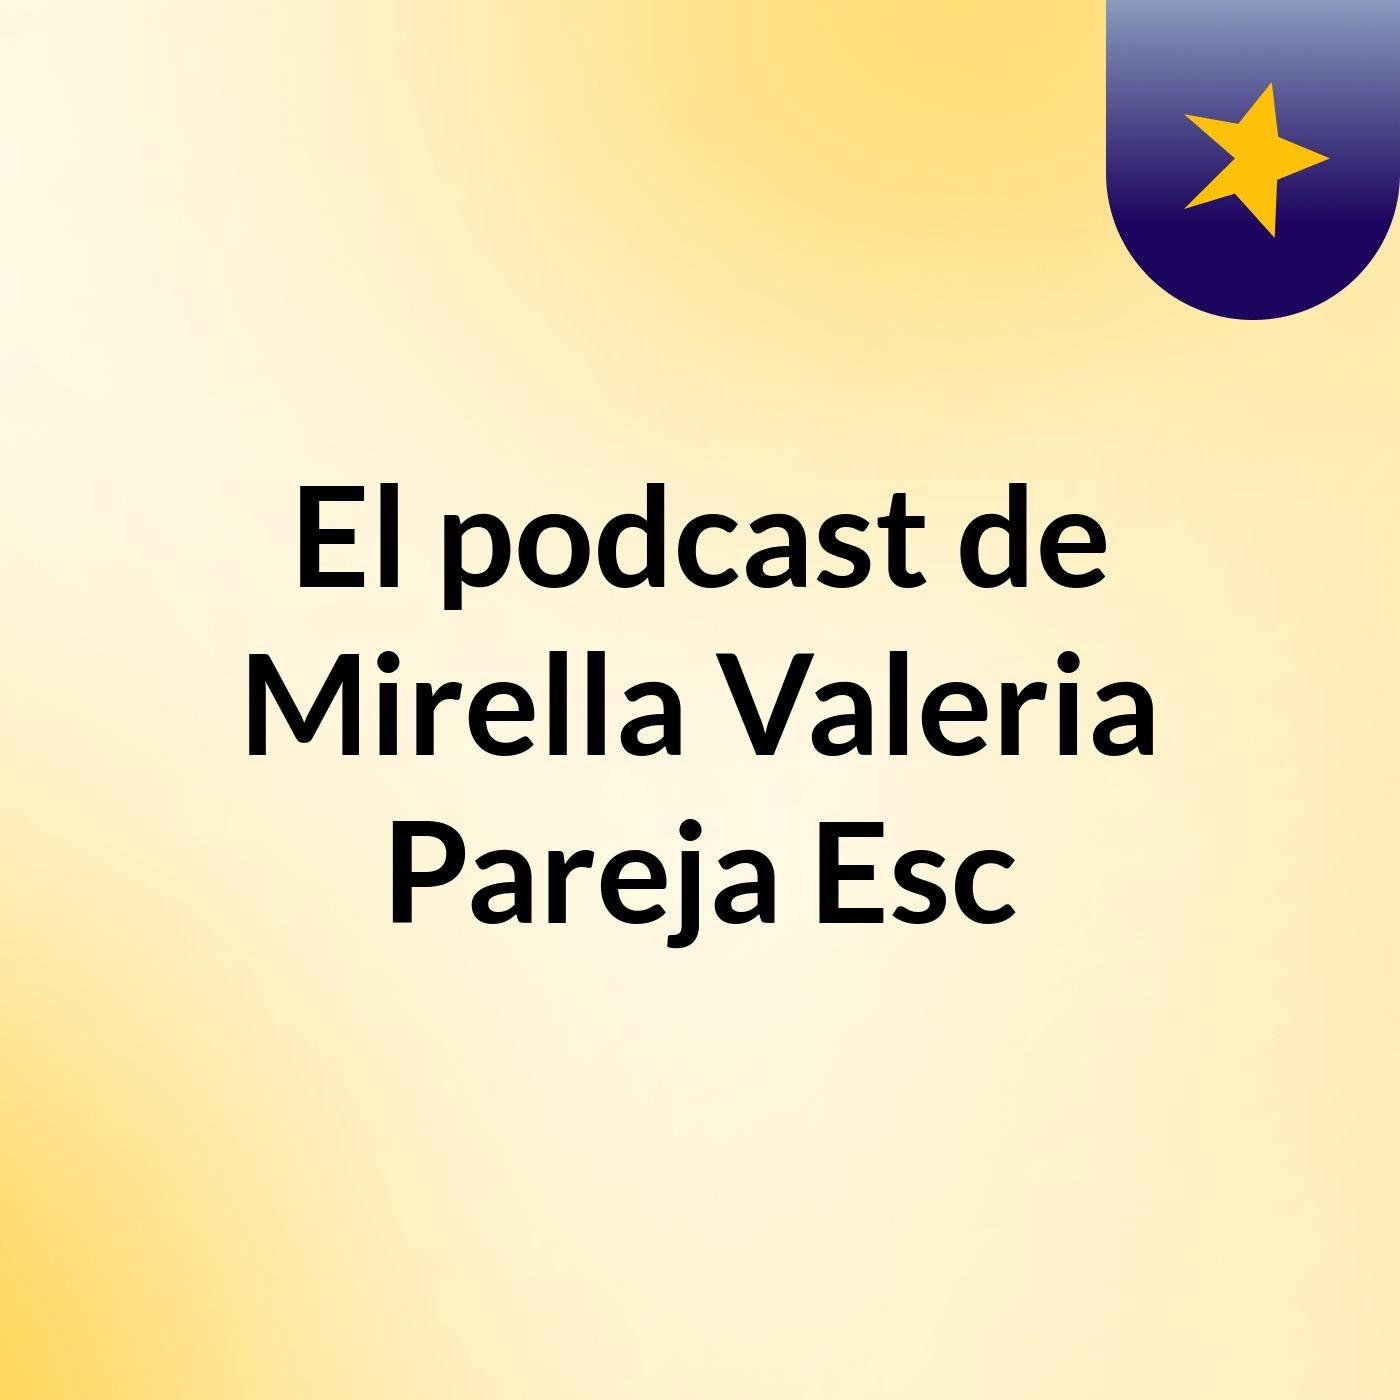 El podcast de Mirella Valeria Pareja Esc